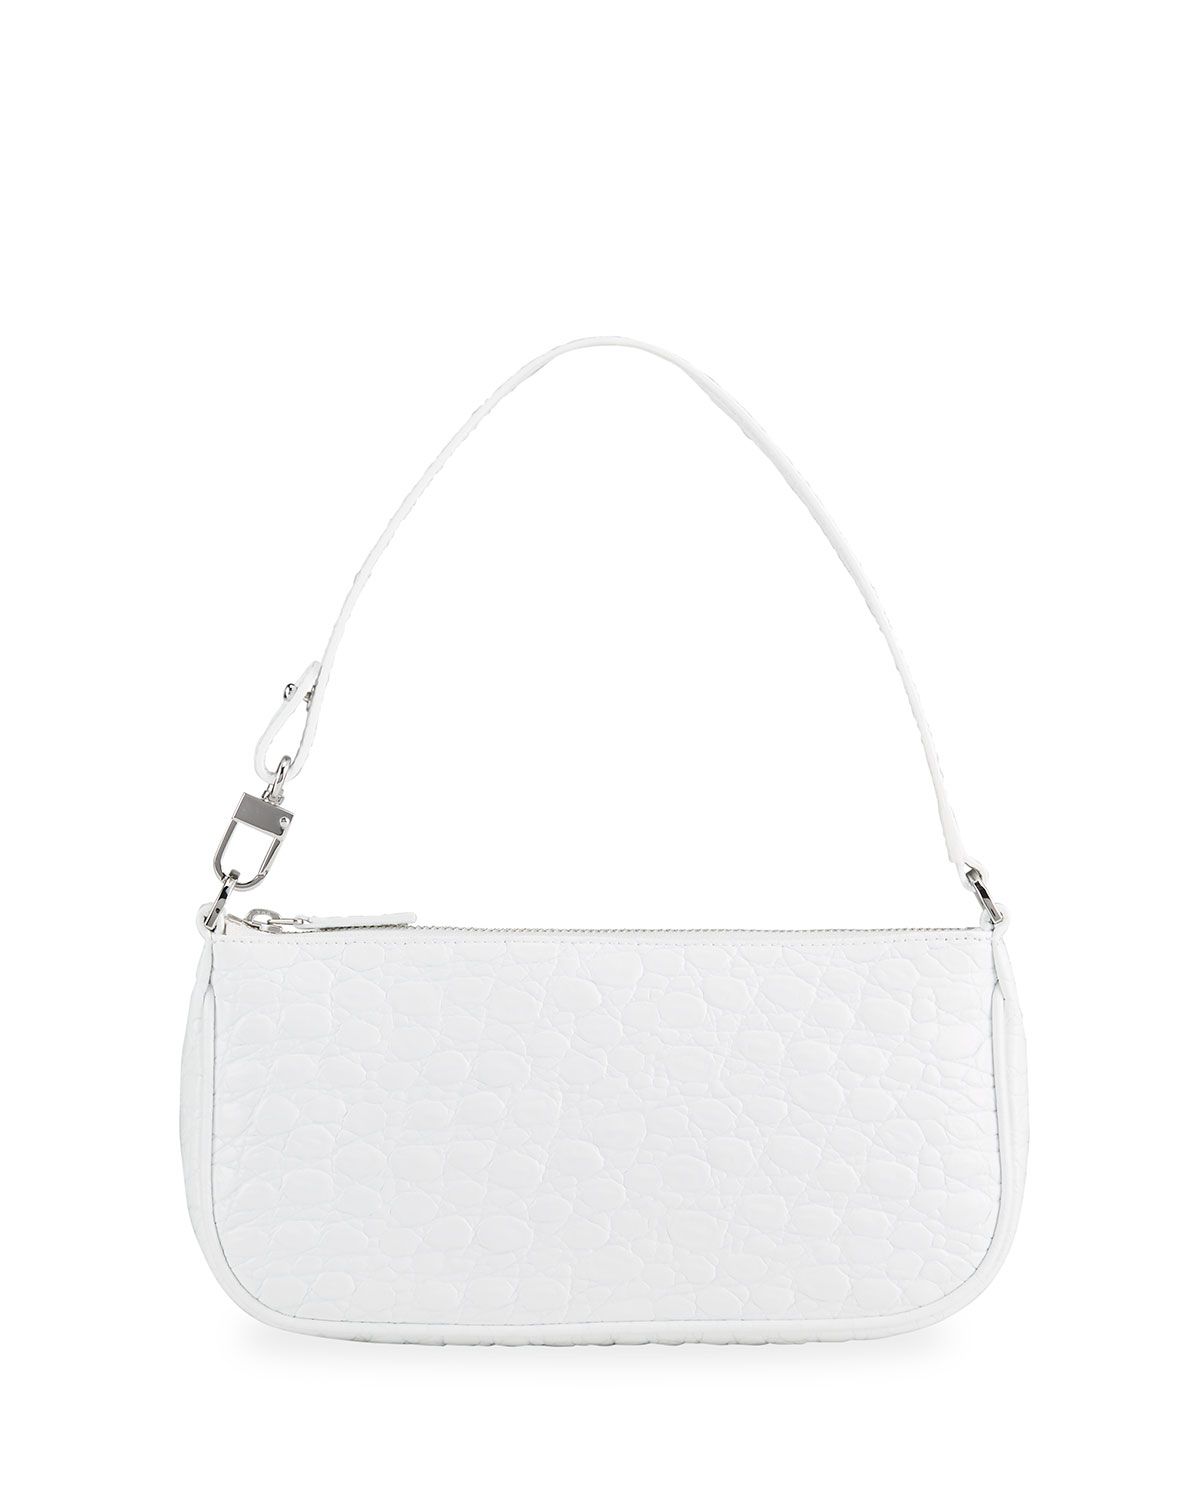 Rachel Moc-Croc Shoulder Bag, White | Neiman Marcus